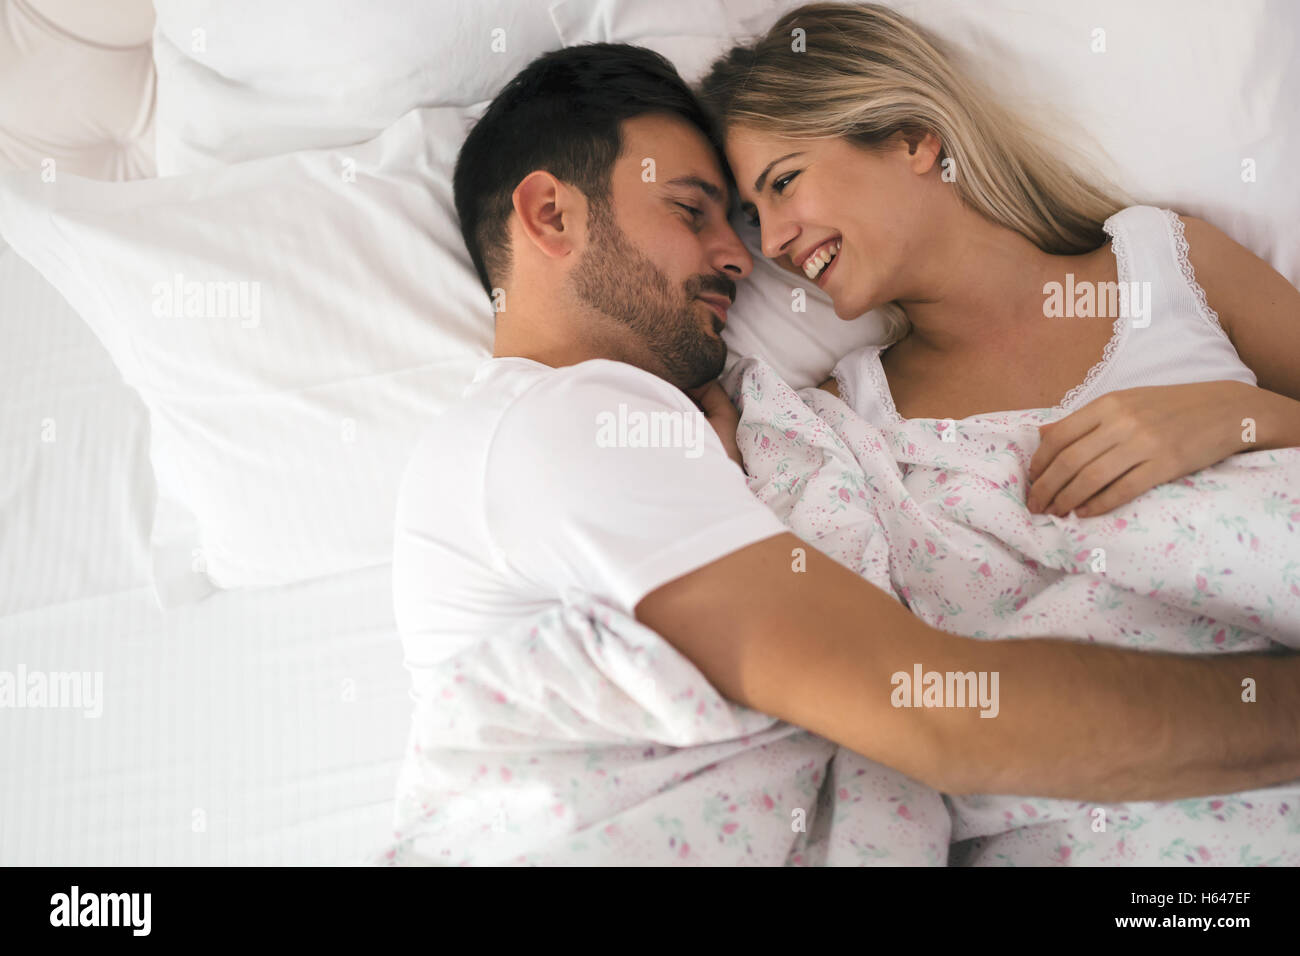 Romantisch zu zweit im Bett in Nachtwäsche lächelnd Stockfoto